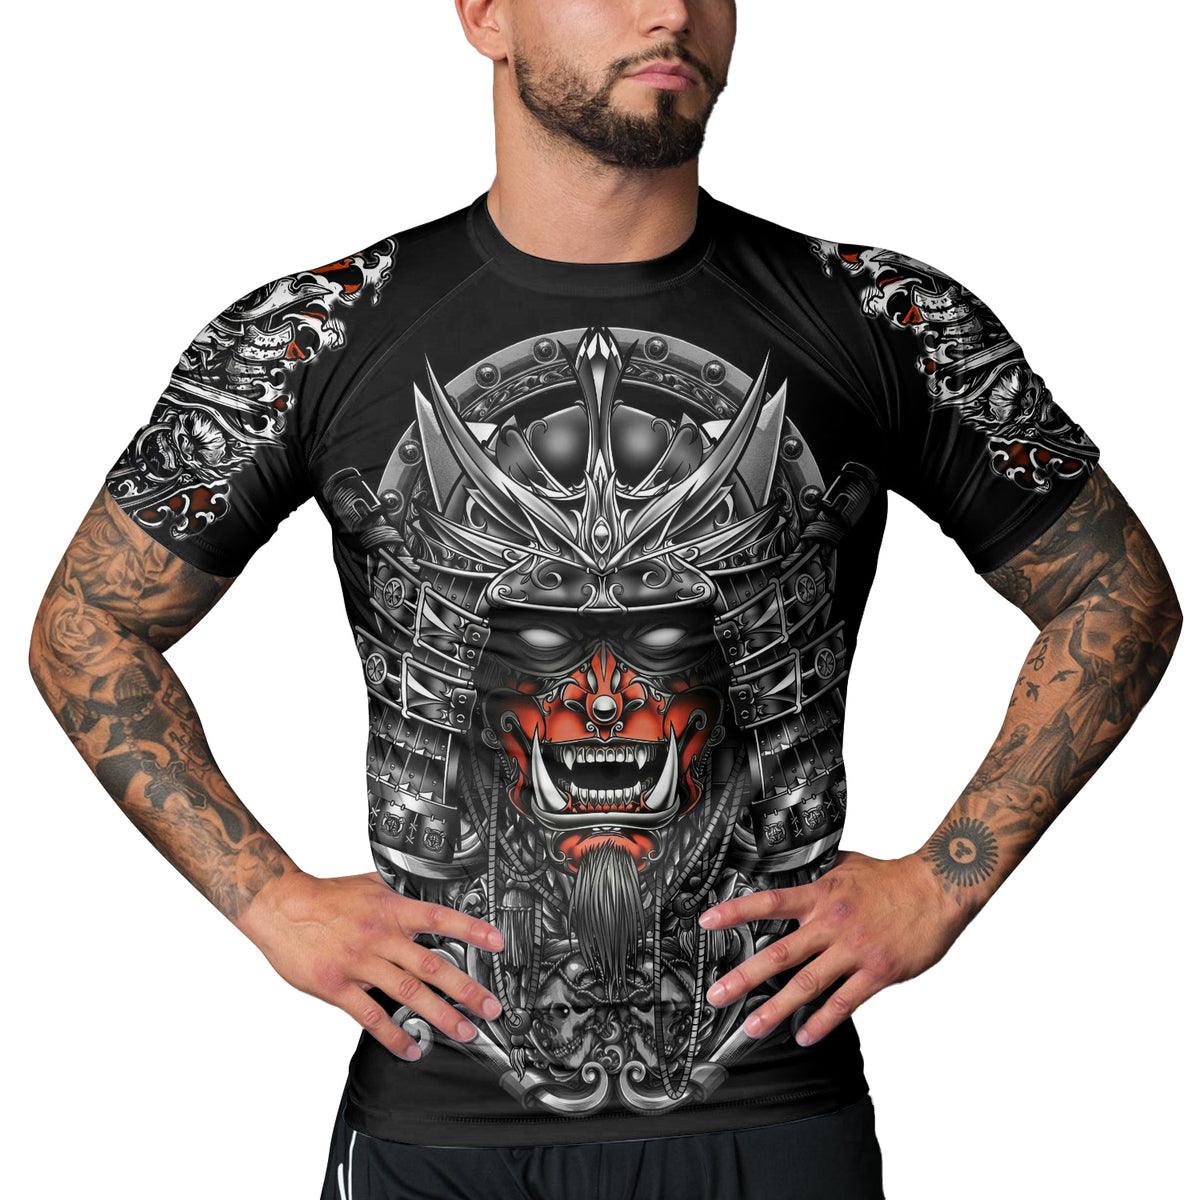 Rashninja Ghost Samurai Men's Short Sleeve Rash Guard - Rashninja LLC